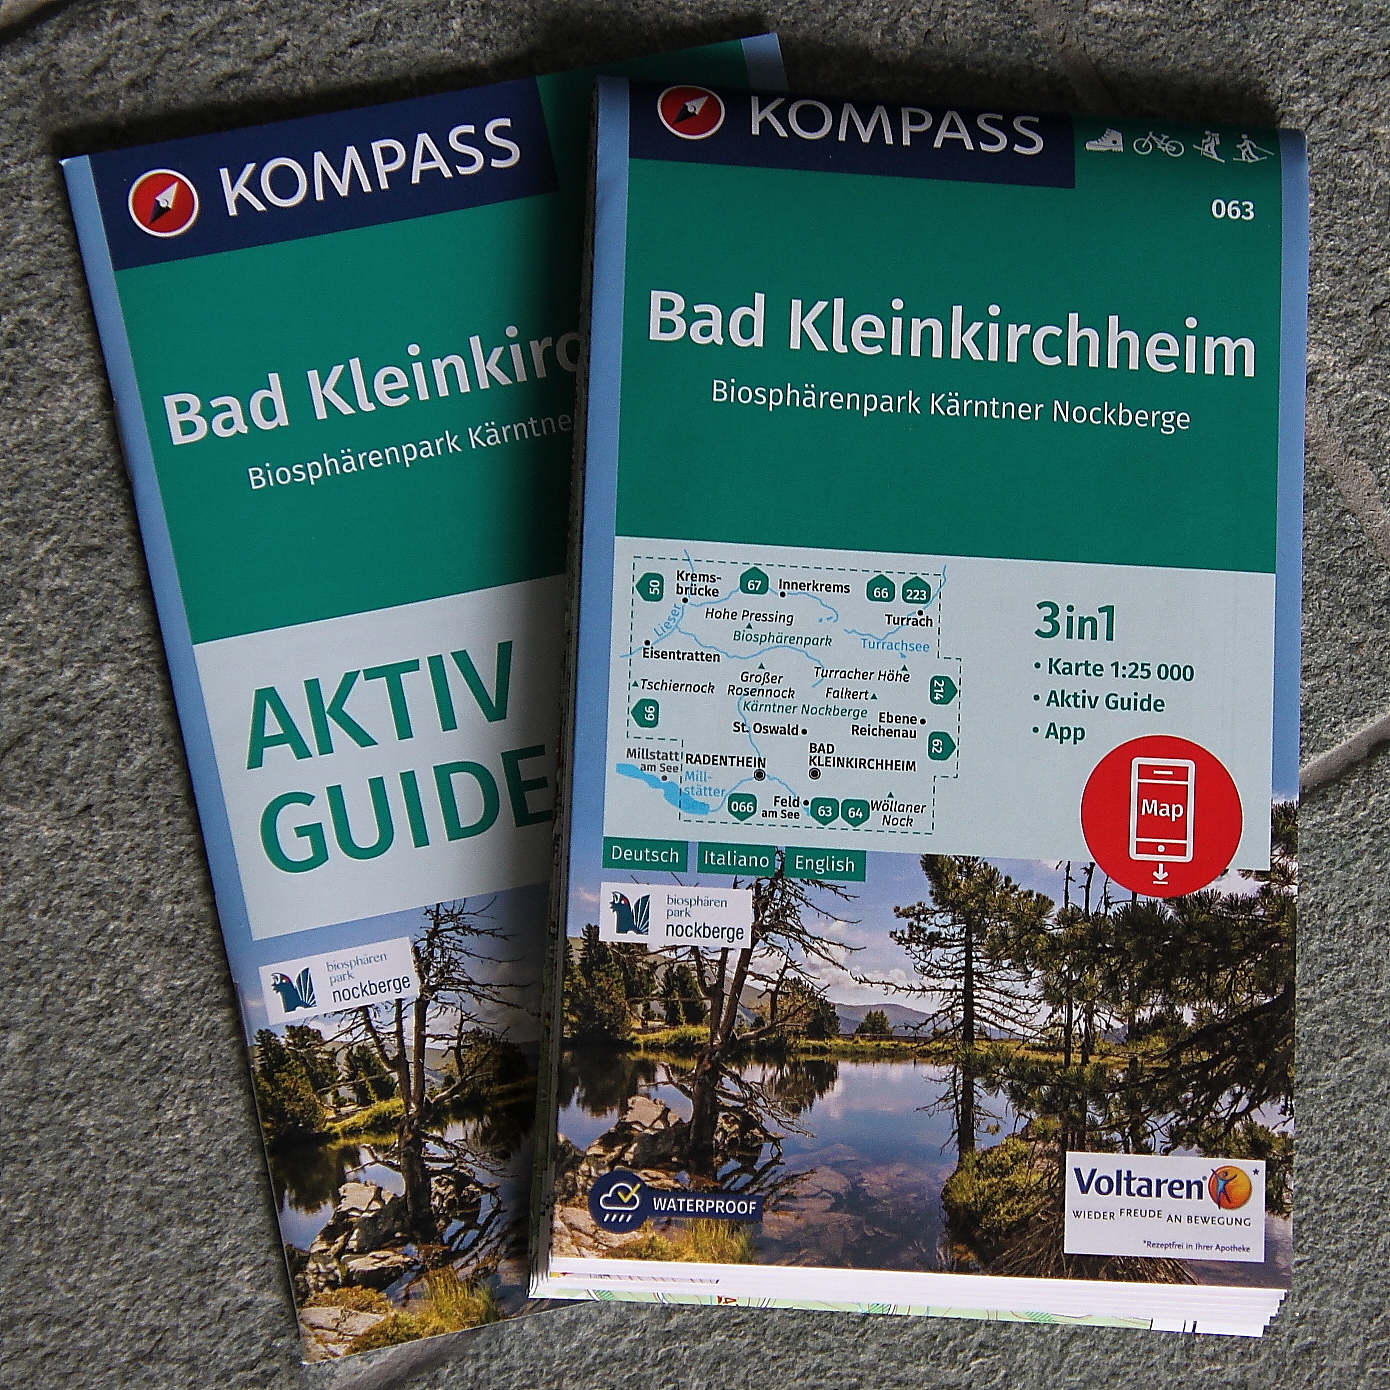 Karte - Bad Kleinkirchheim (063)